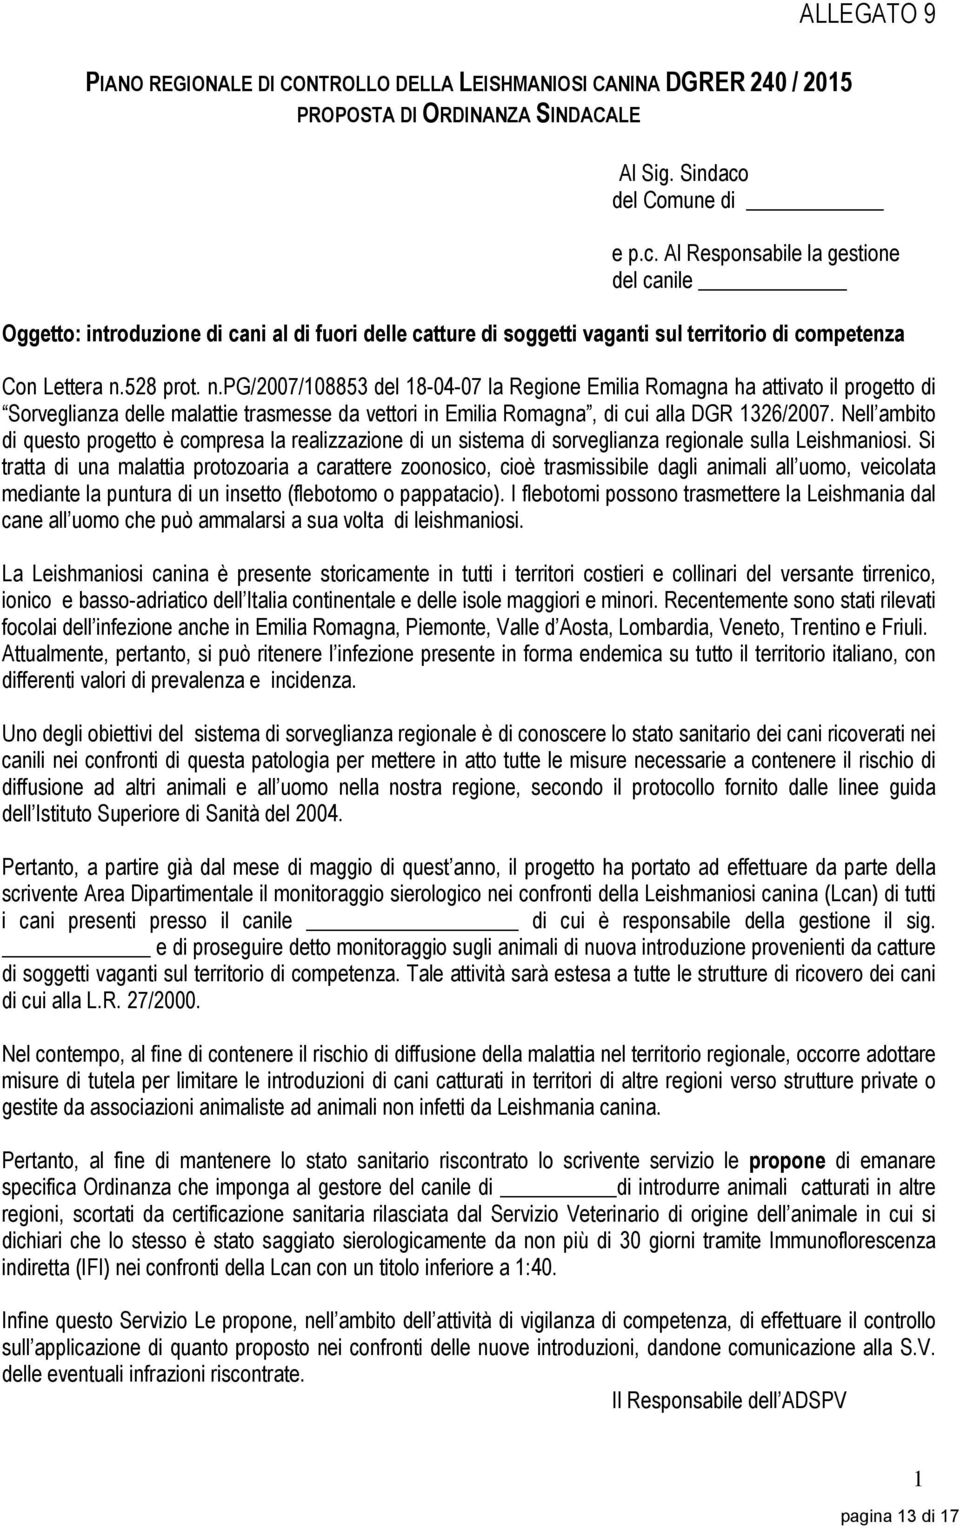 528 prot. n.pg/2007/108853 del 18-04-07 la Regione Emilia Romagna ha attivato il progetto di Sorveglianza delle malattie trasmesse da vettori in Emilia Romagna, di cui alla DGR 1326/2007.